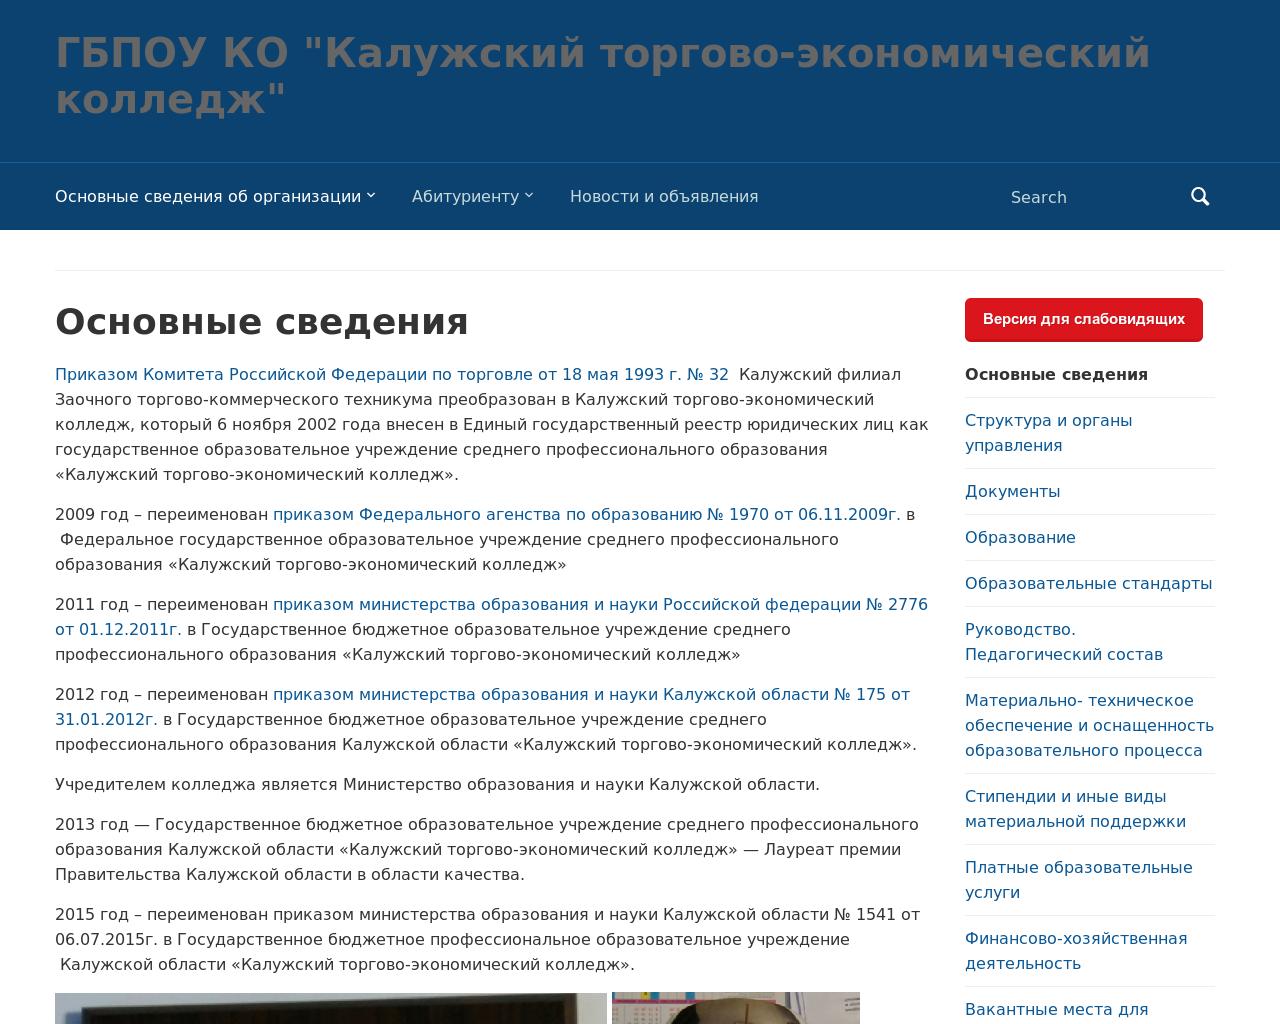 Изображение сайта ktek40.ru в разрешении 1280x1024